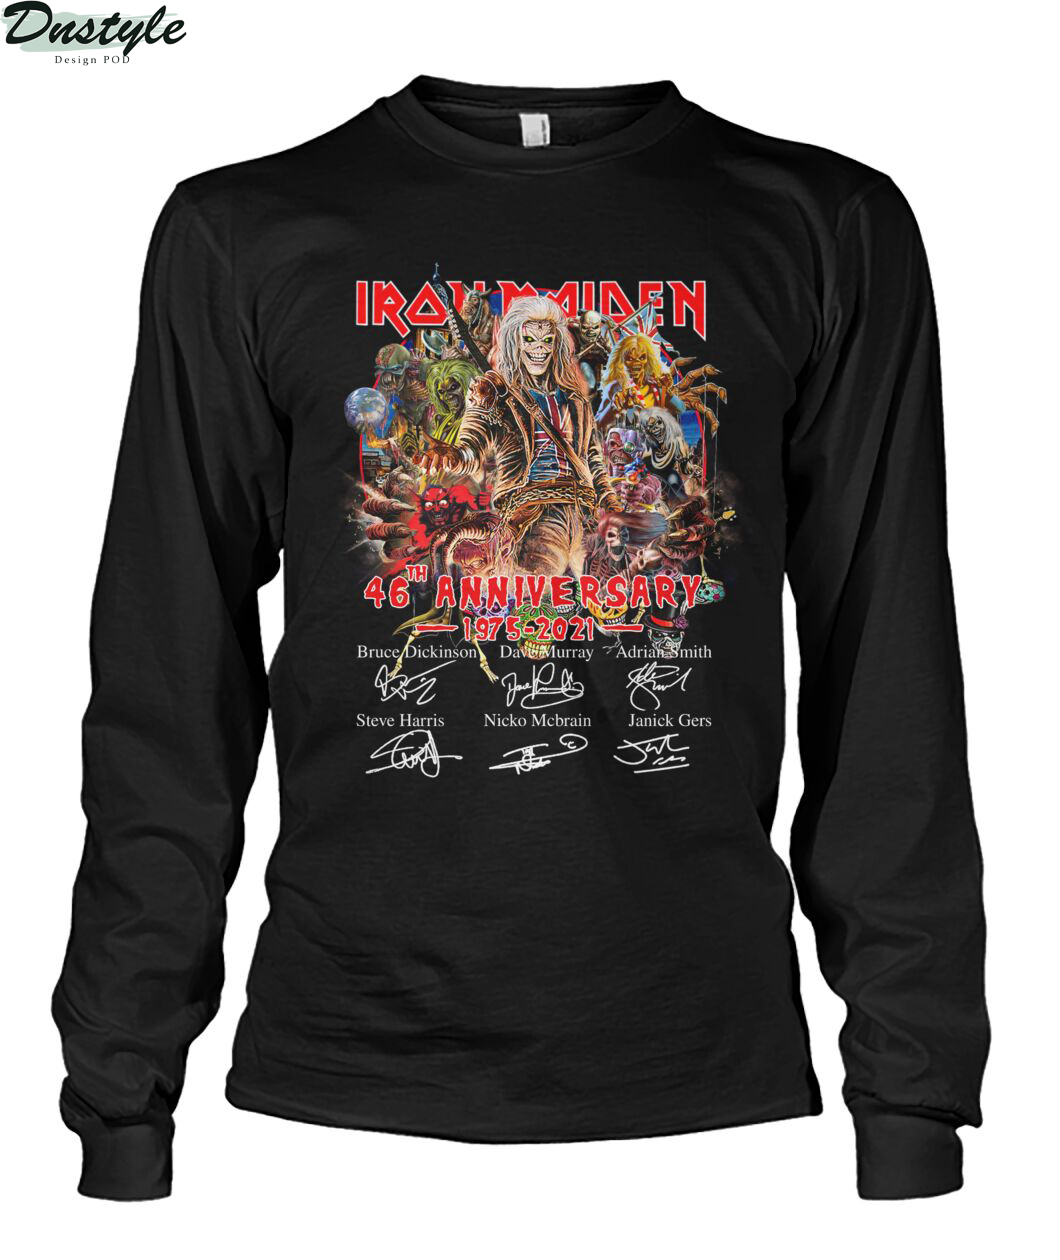 Iron Maiden 46th anniversary 1975 2021 signature shirt